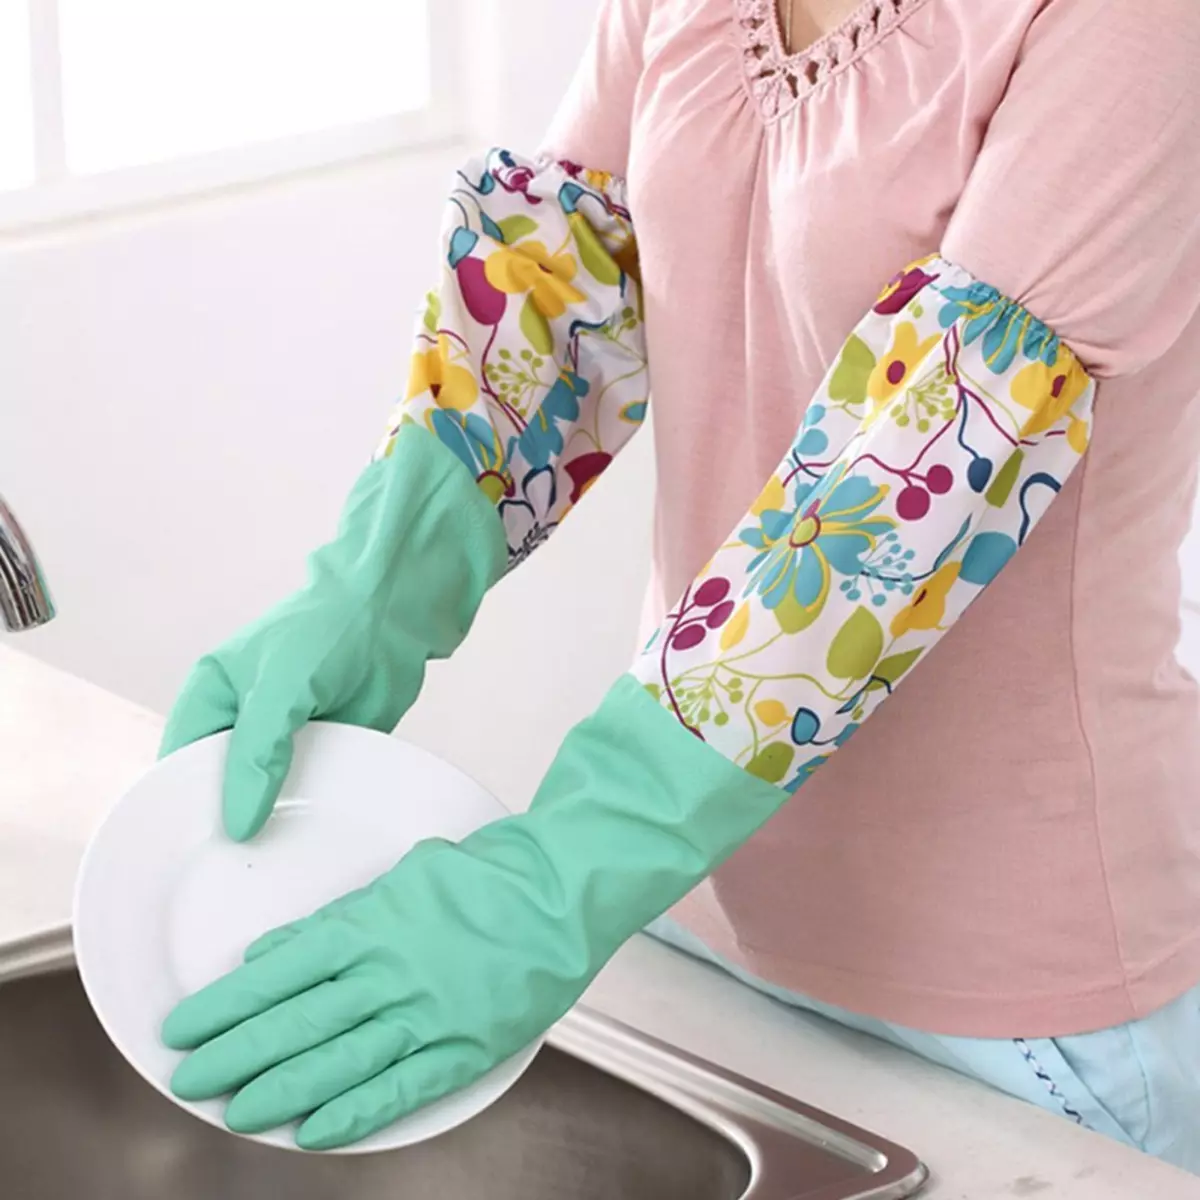 ถุงมือสำหรับทำความสะอาด